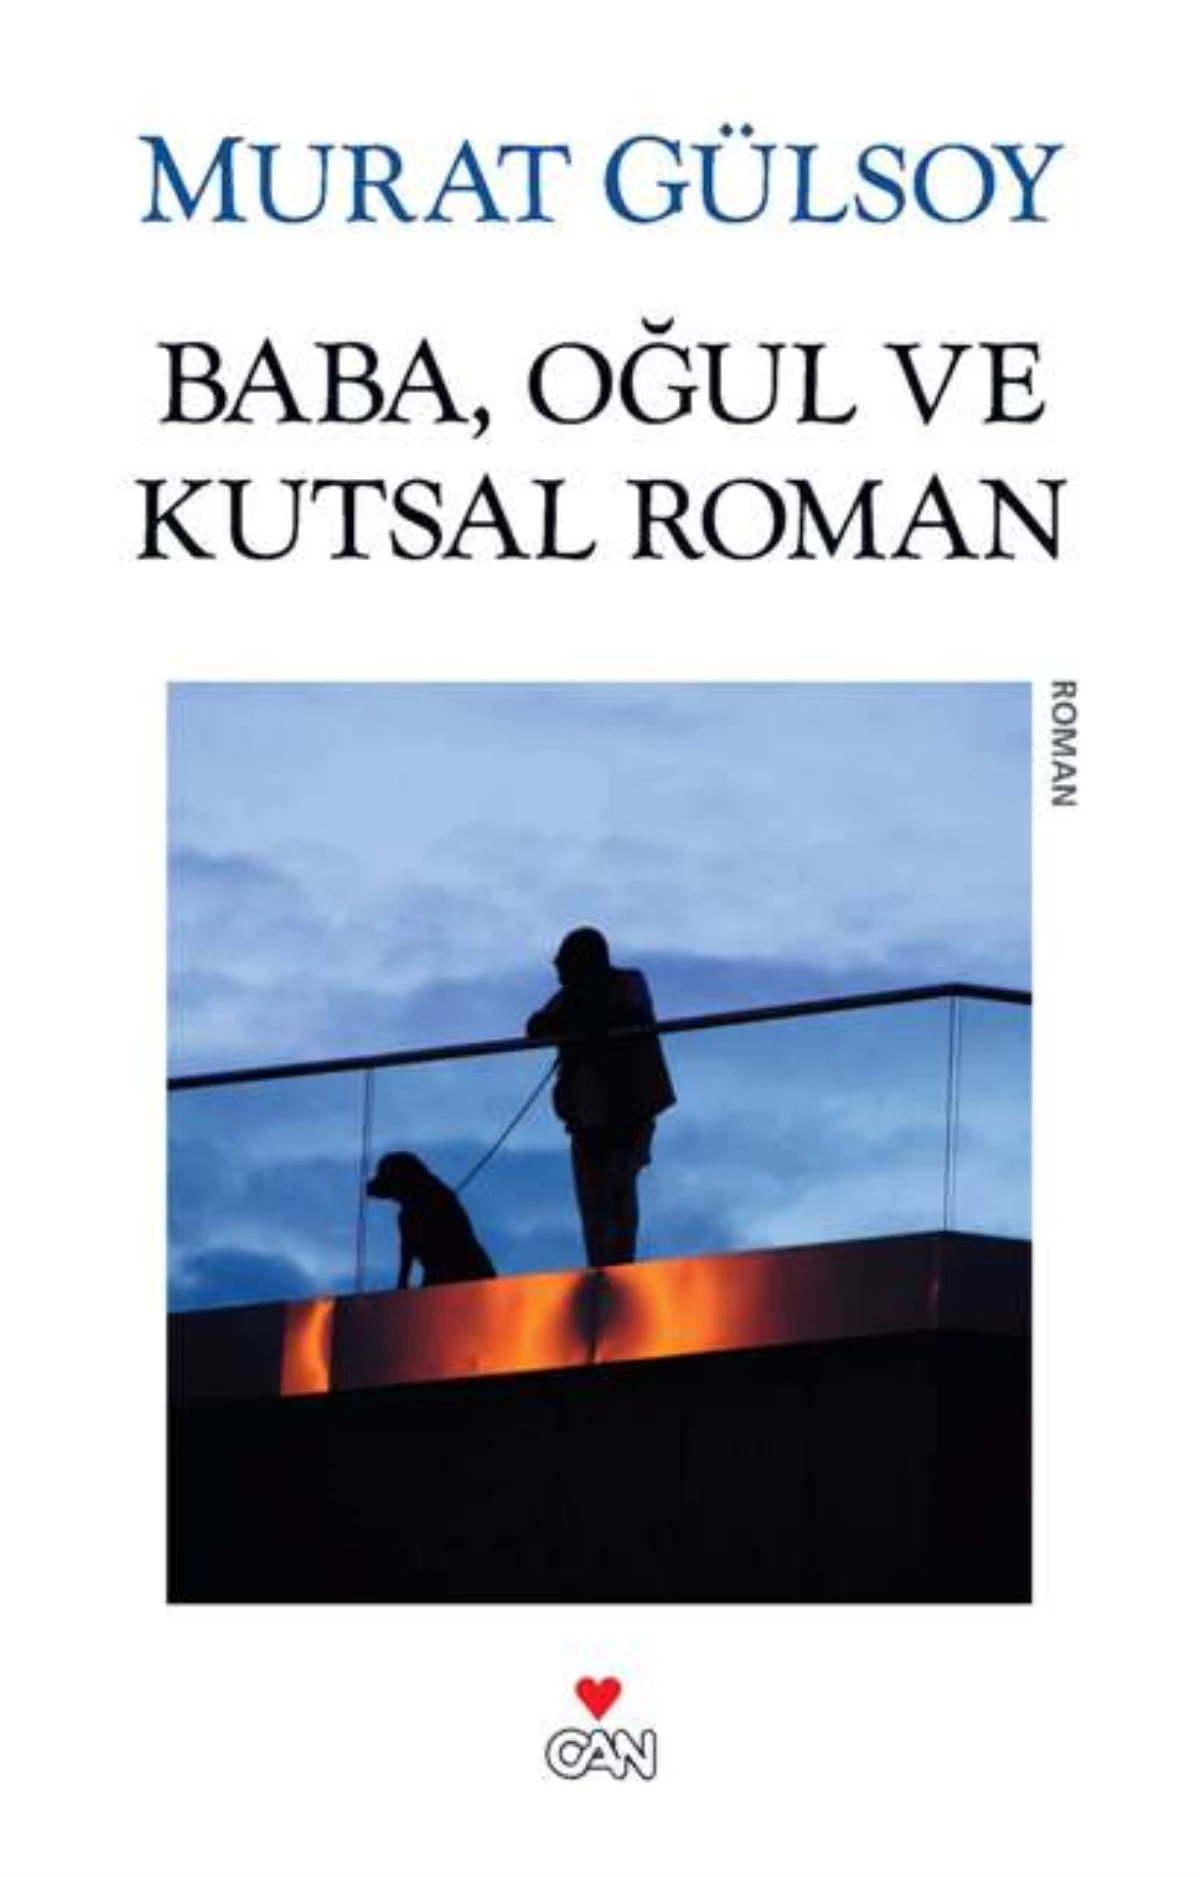 2013 NDS Edebiyat Ödülü Murat Gülsoy\'un!